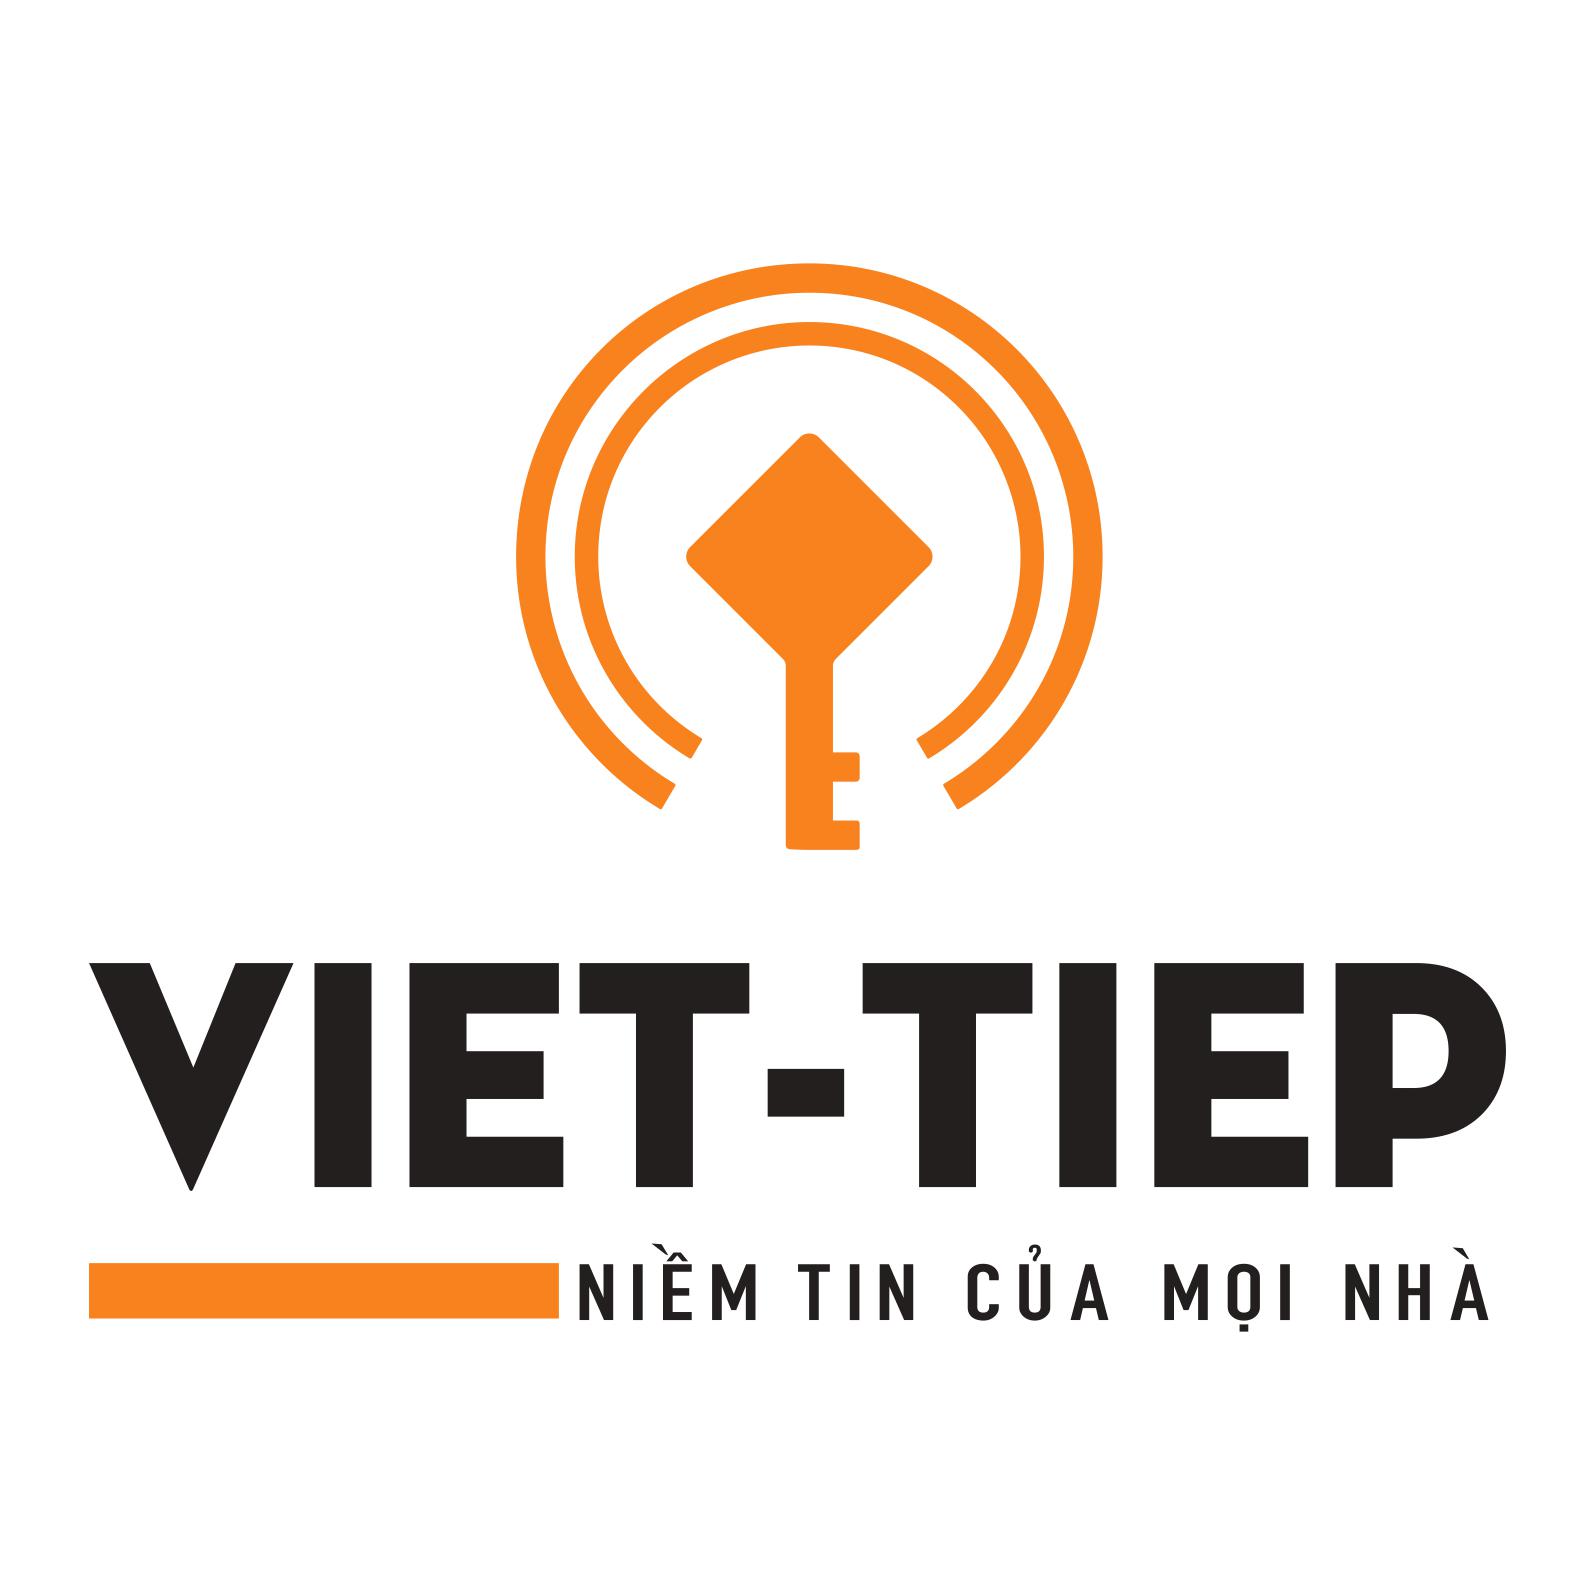 Ngày 24/4/2016 Công ty cổ phần Khóa Việt - Tiệp Họp Đại hội cổ đông thường niên 2016